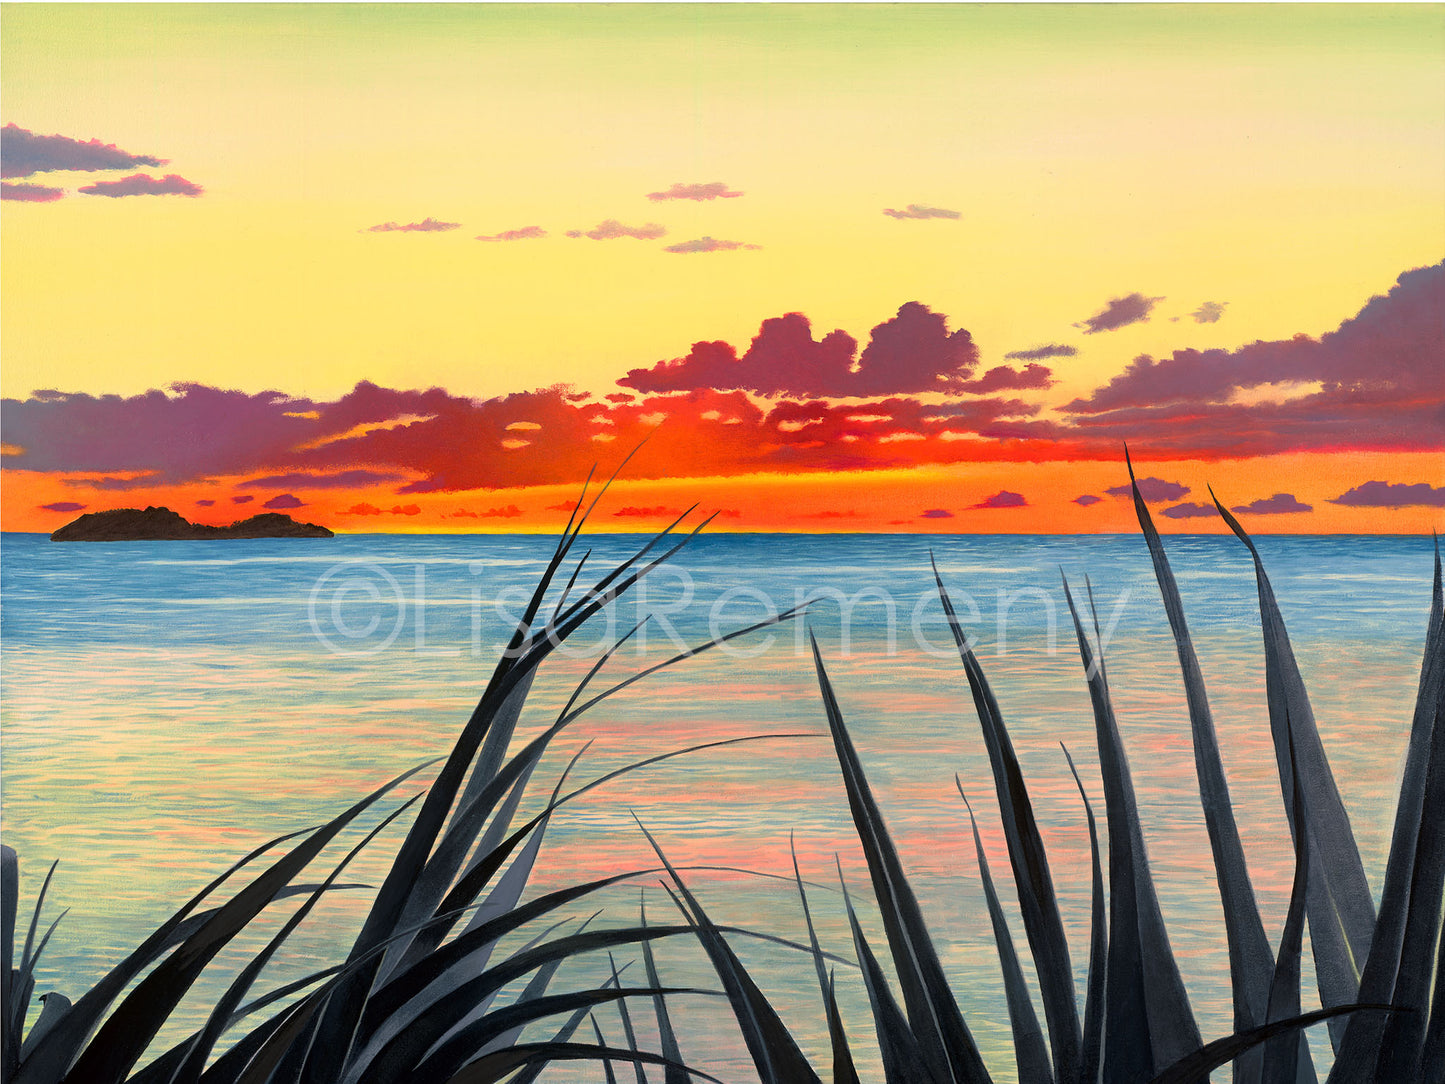 Giclée - Sunset on the Bay